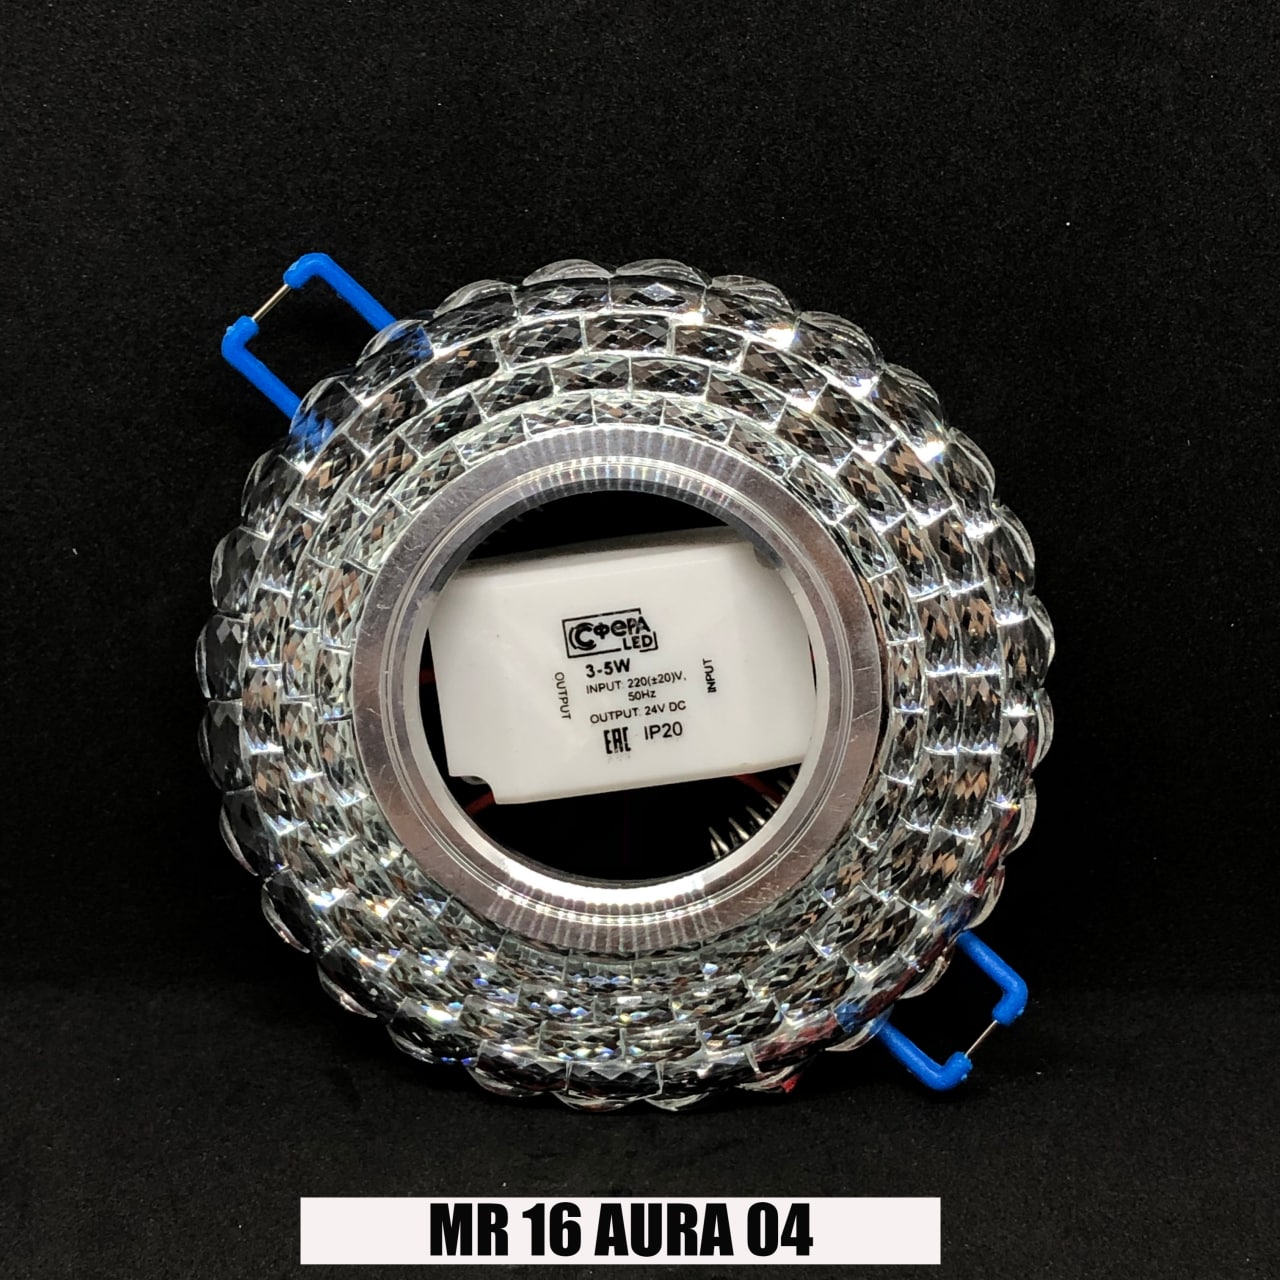 Светильники AURA MR16 со скидкой 35%